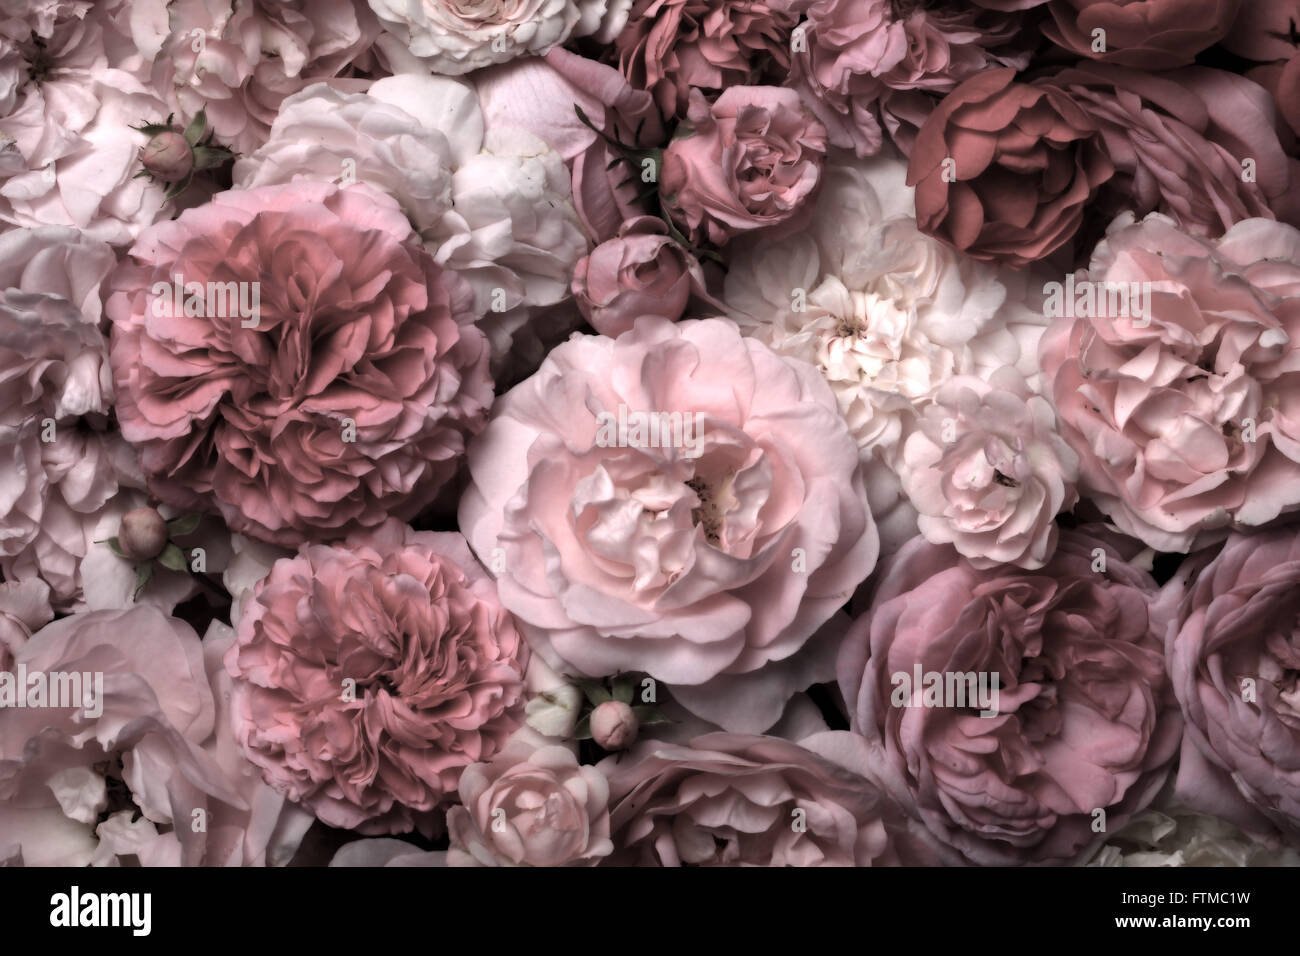 Image de texture de fond roses vintage rose. Banque D'Images